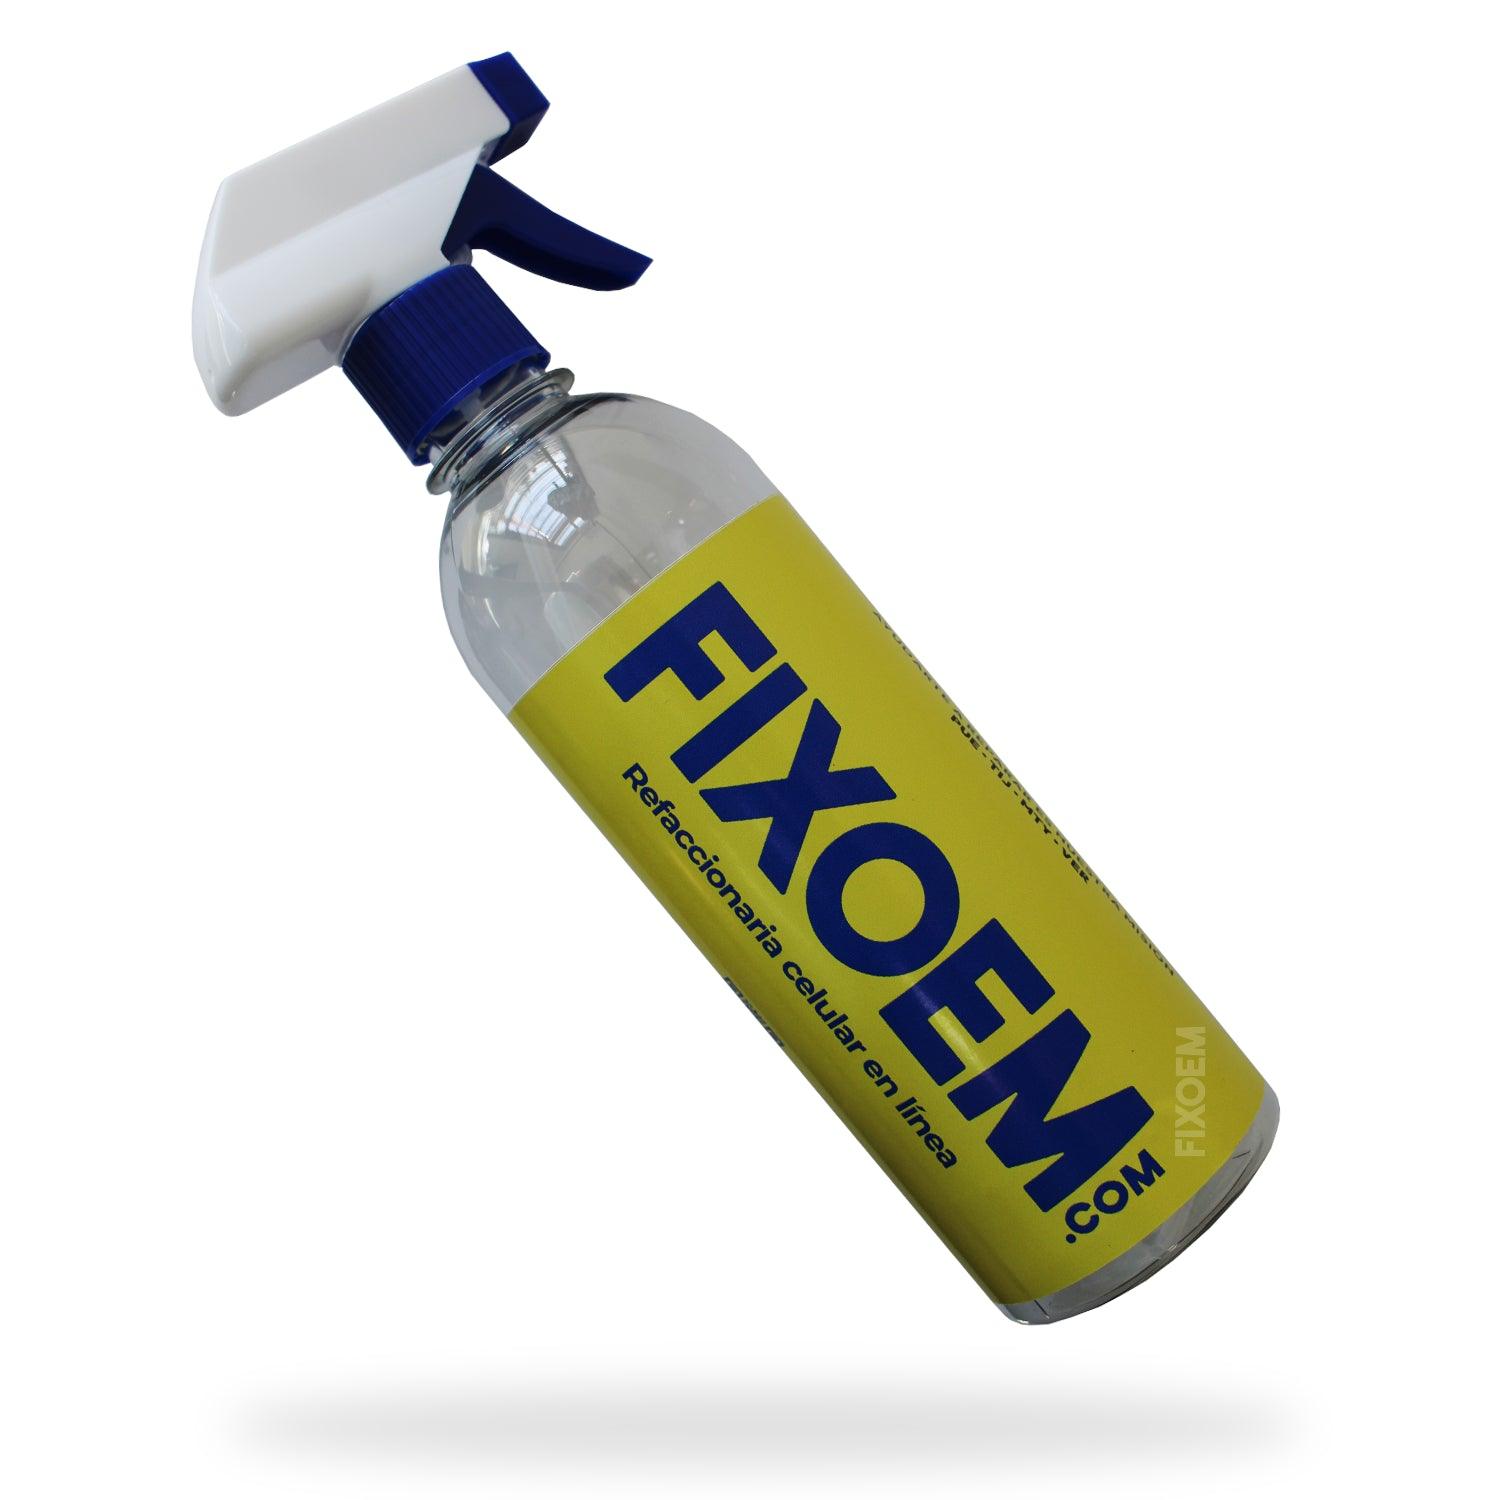 Atomizador Frasco Spray Botella a solo $ 40.00 Refaccion y puestos celulares, refurbish y microelectronica.- FixOEM